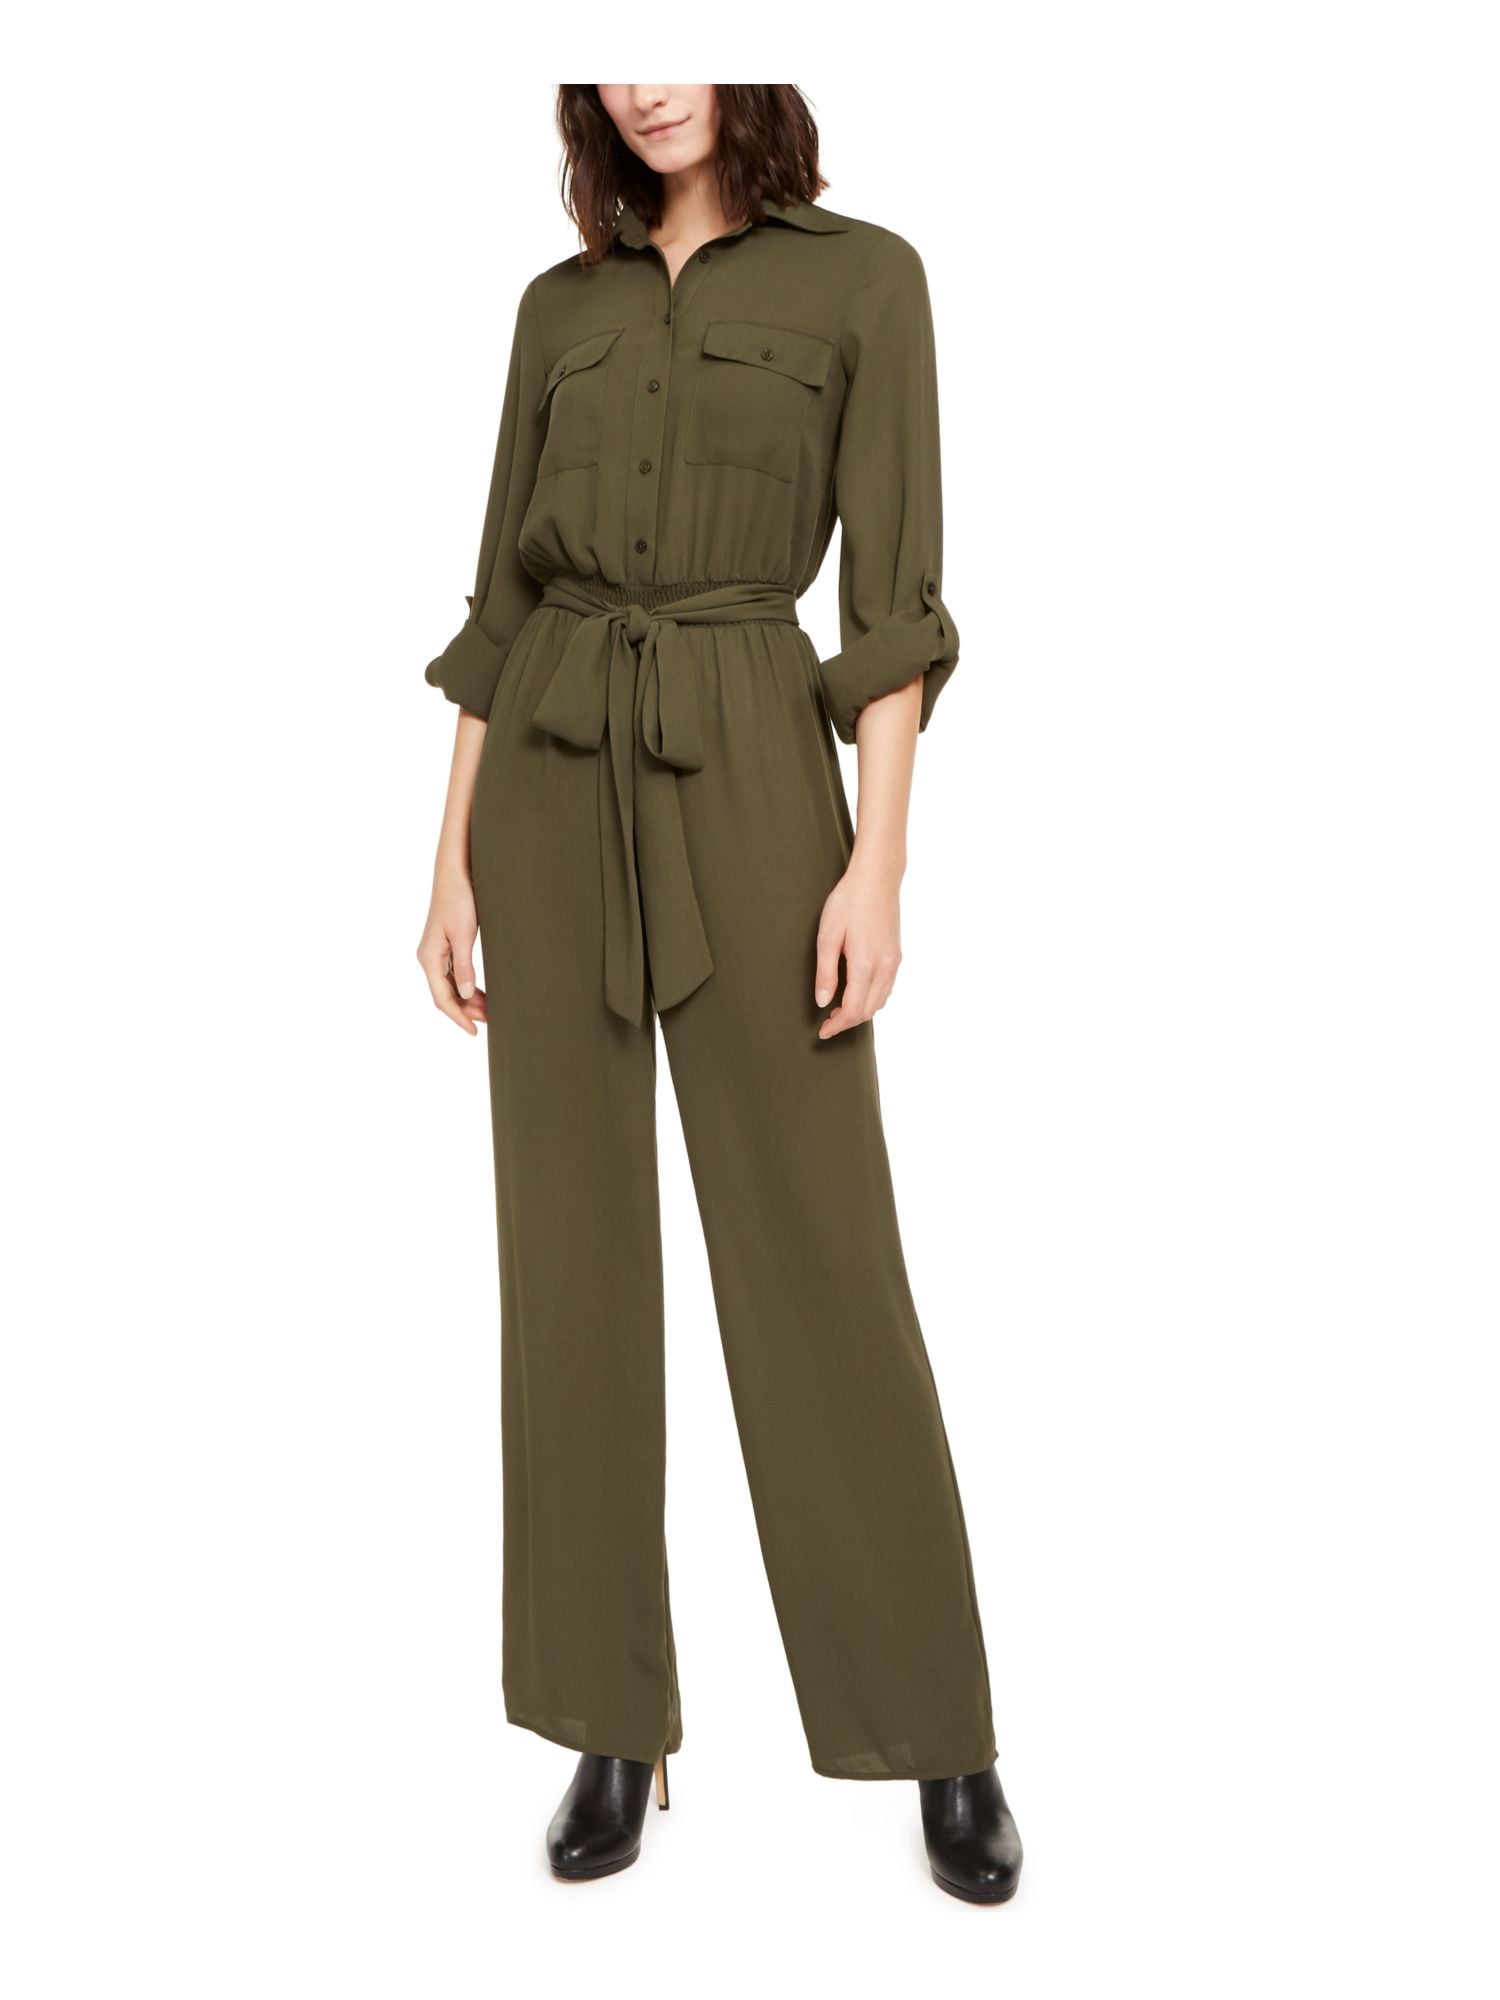 Womens Green 3/4 Sleeve Collared Wide Leg Evening Jumpsuit Size: - Walmart.com